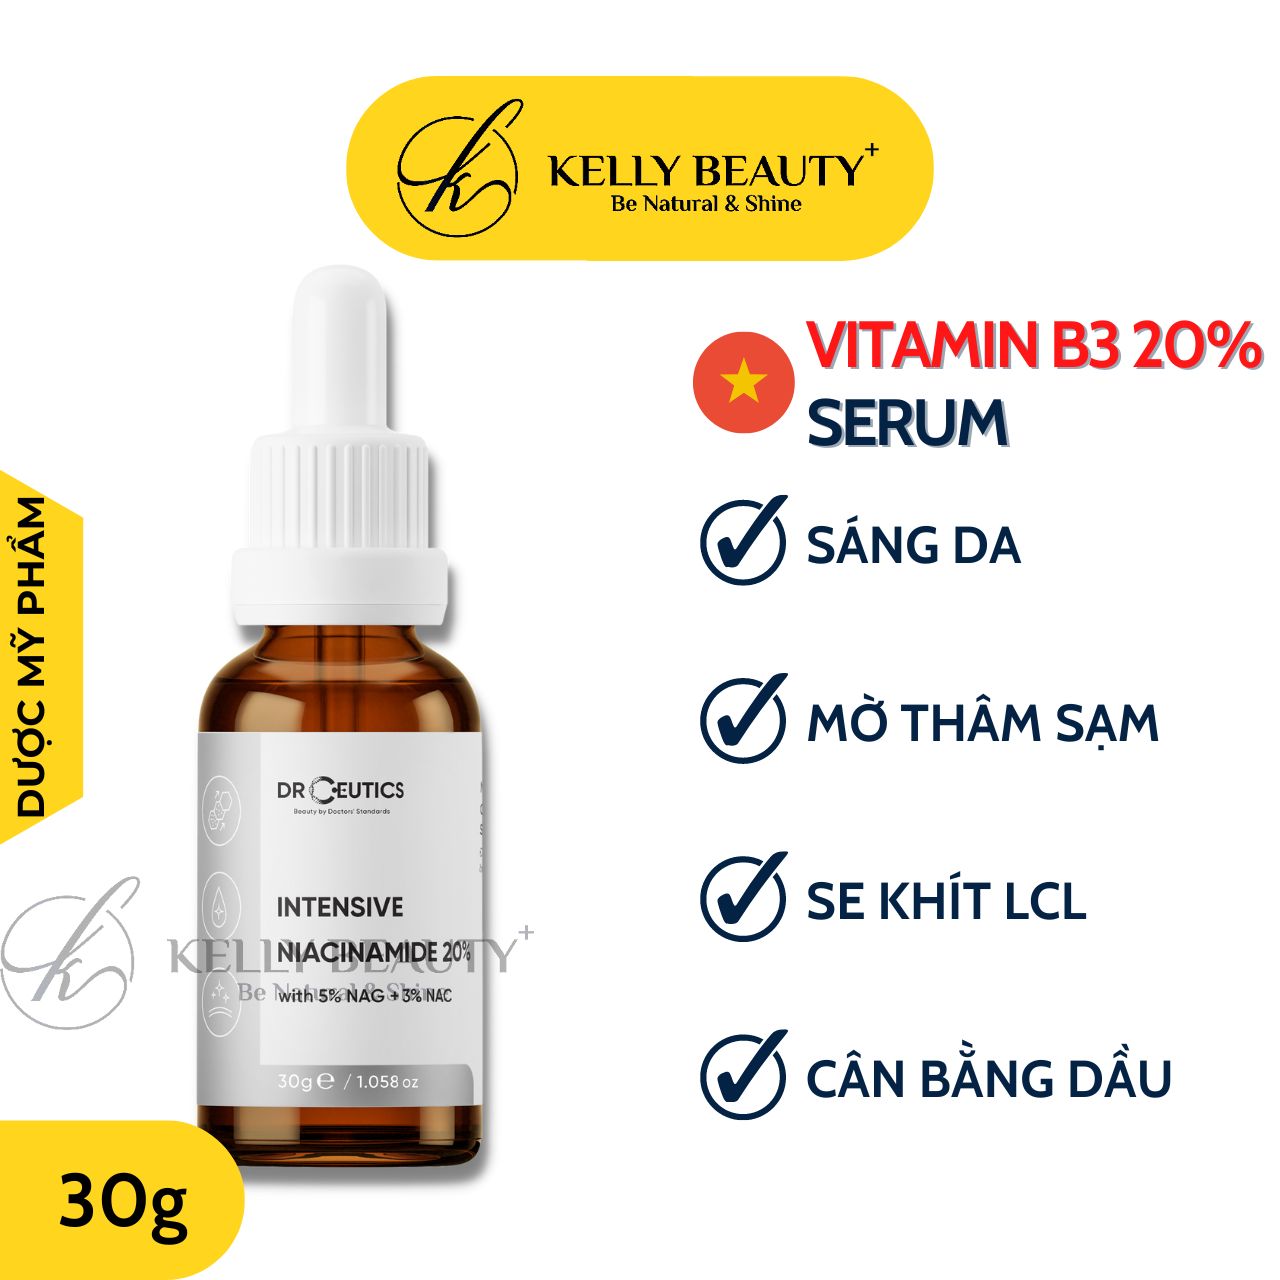 Serum Vitamin B3 20% DrCeutics - Làm Sáng Da, Mờ Thâm Sạm &amp; Se LCL - Niacinamide 20% + NAG 5% + NAC 3% | Kelly Beauty